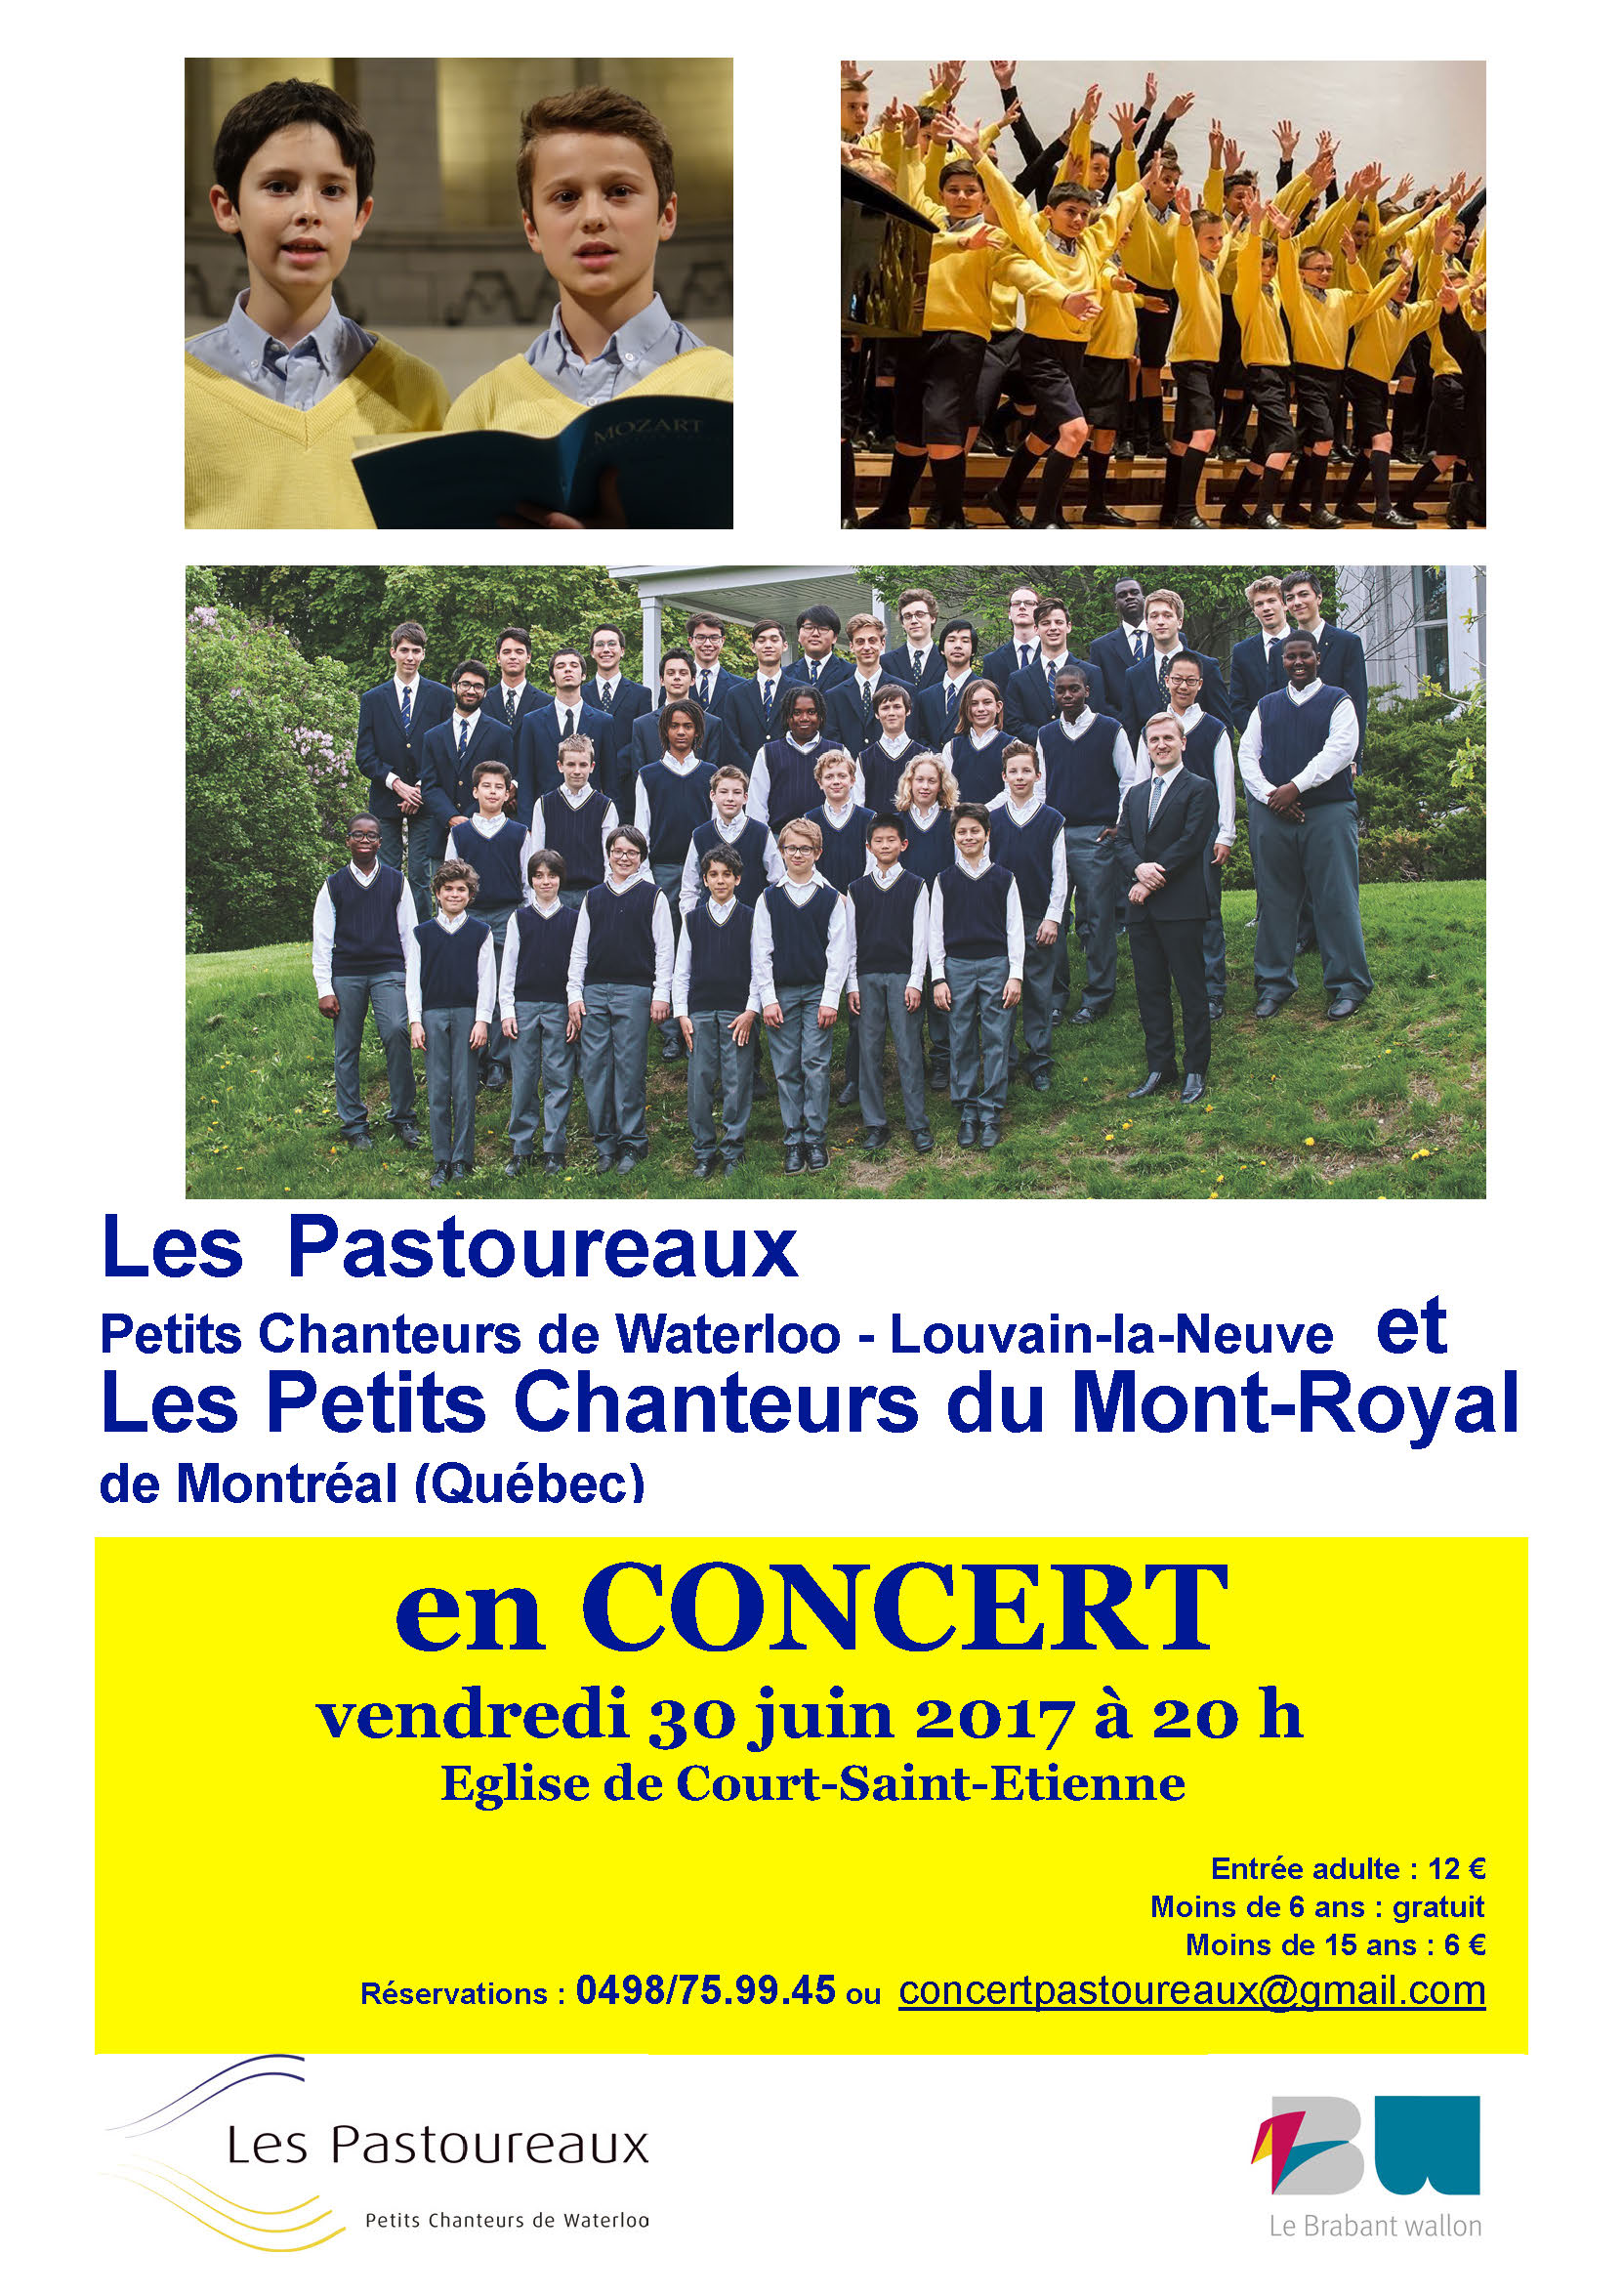 Concert du 30 juin: les Pastoureaux accueillent les Petits Chanteurs du Mont- Royal (Québec)